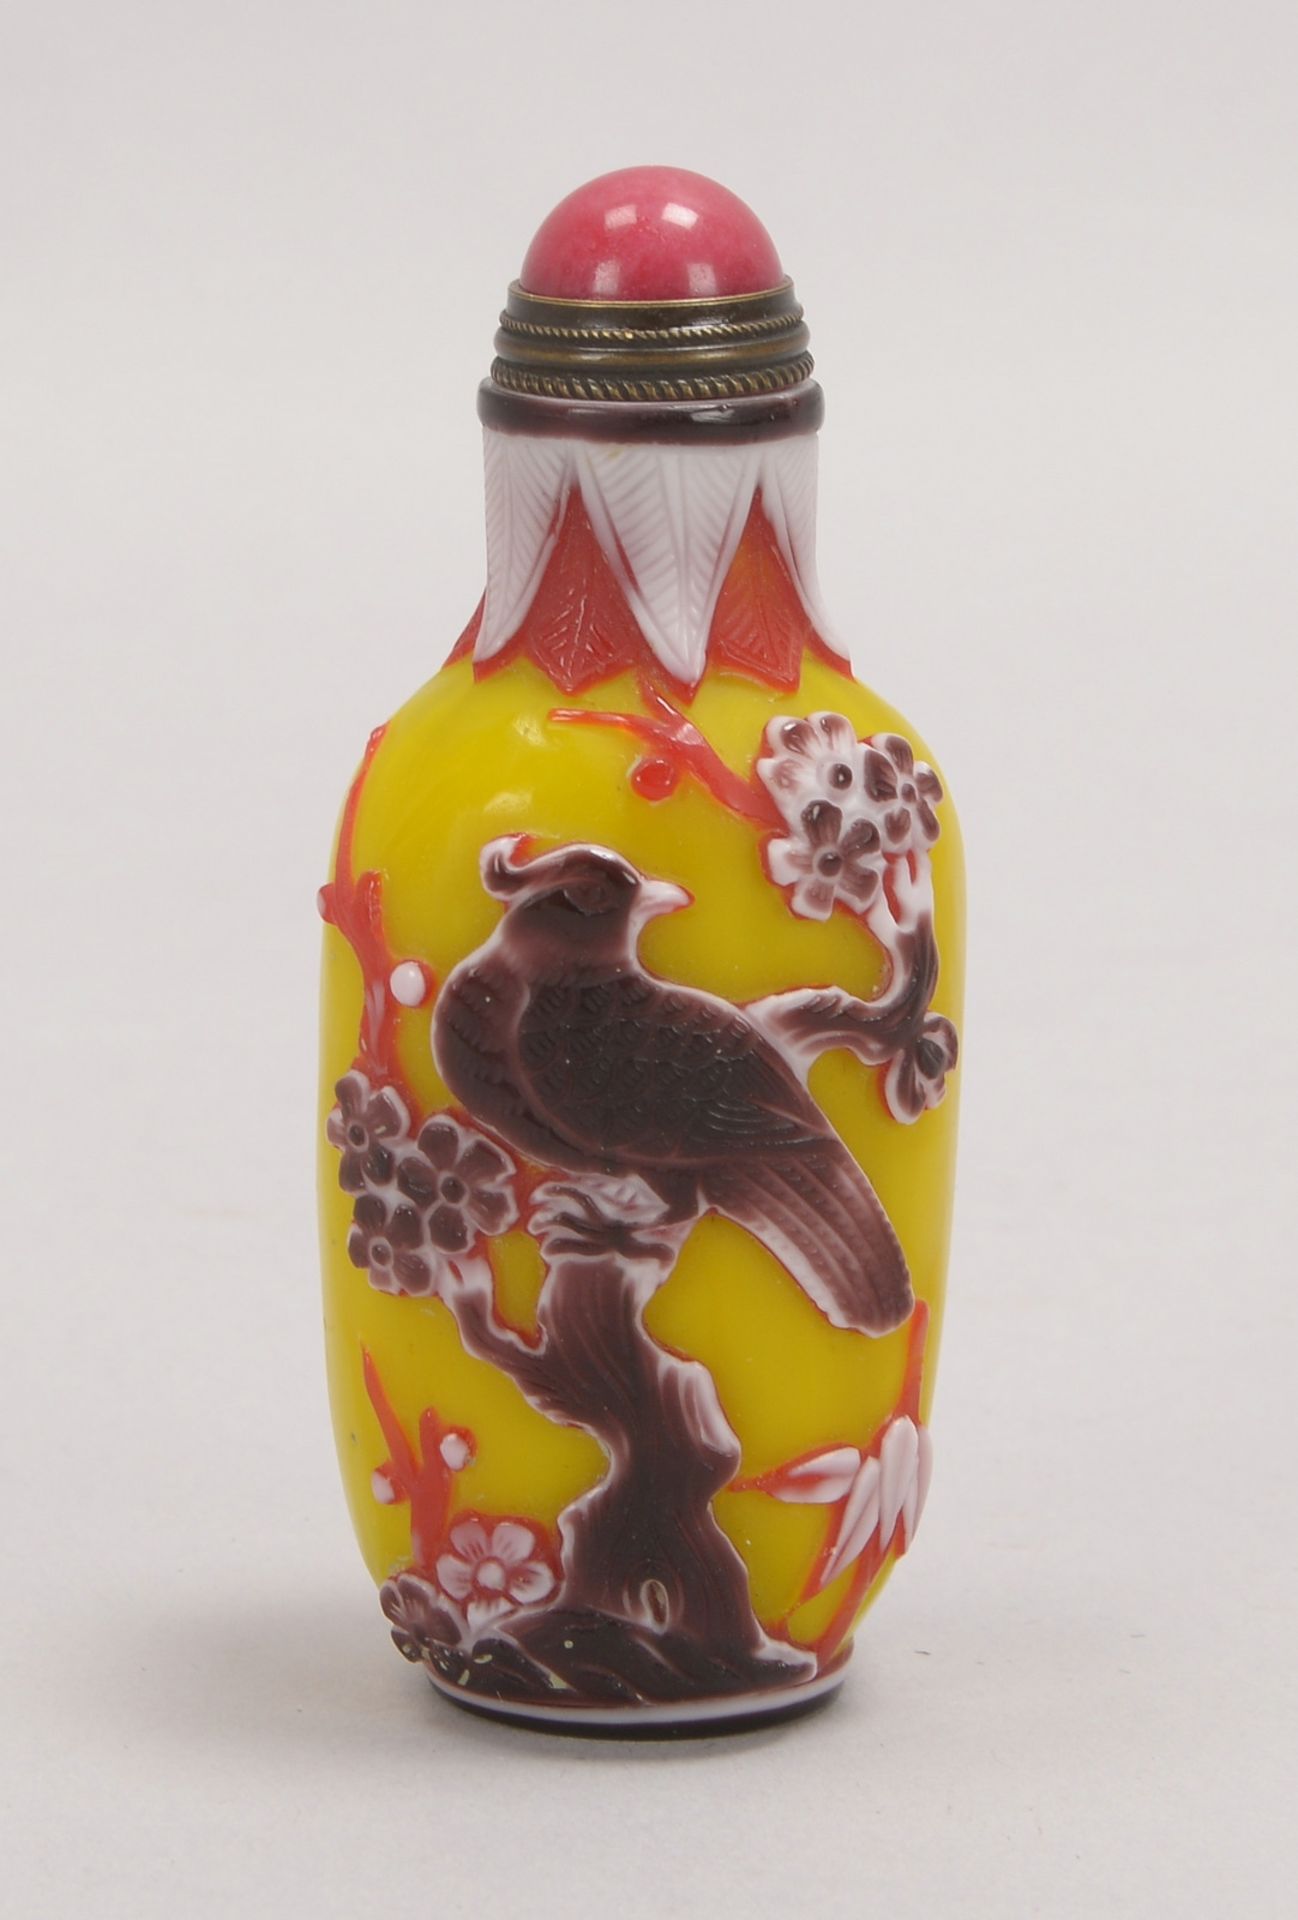 Snuffbottle, 4-farb. Pekingglas, mit geschnittenem floralem/figürl. Dekor, signiert - Bild 2 aus 2